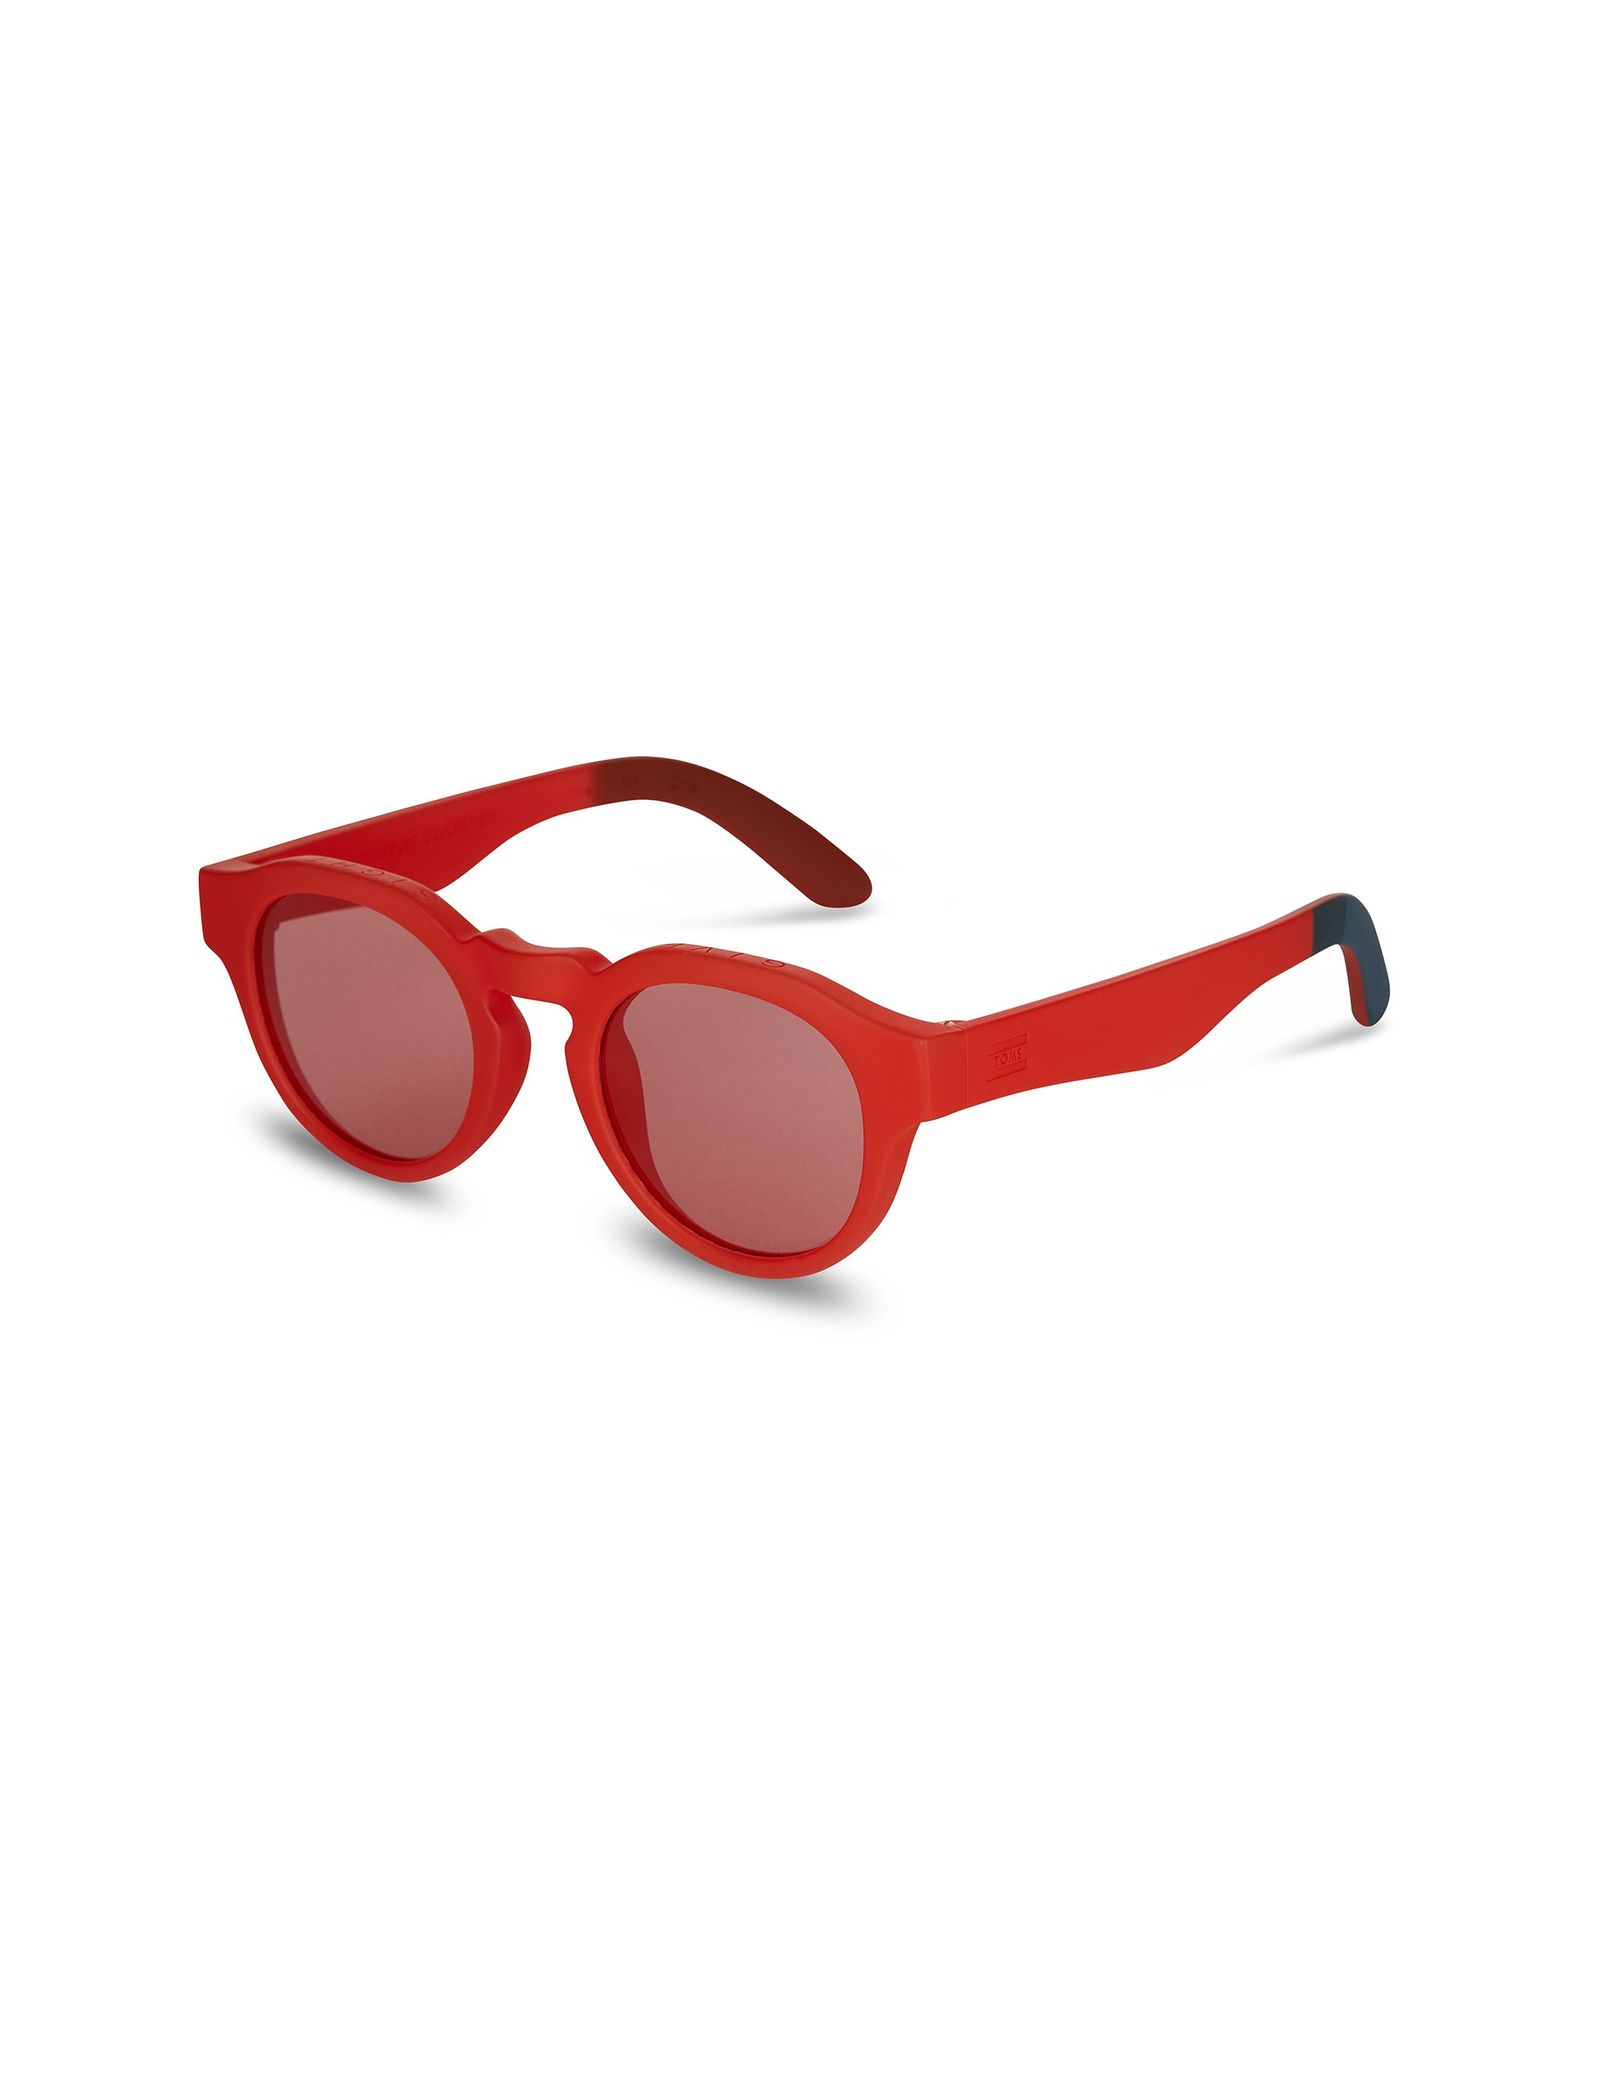 عینک آفتابی پنتوس بزرگسال Bryton - تامز - قرمز  - 3